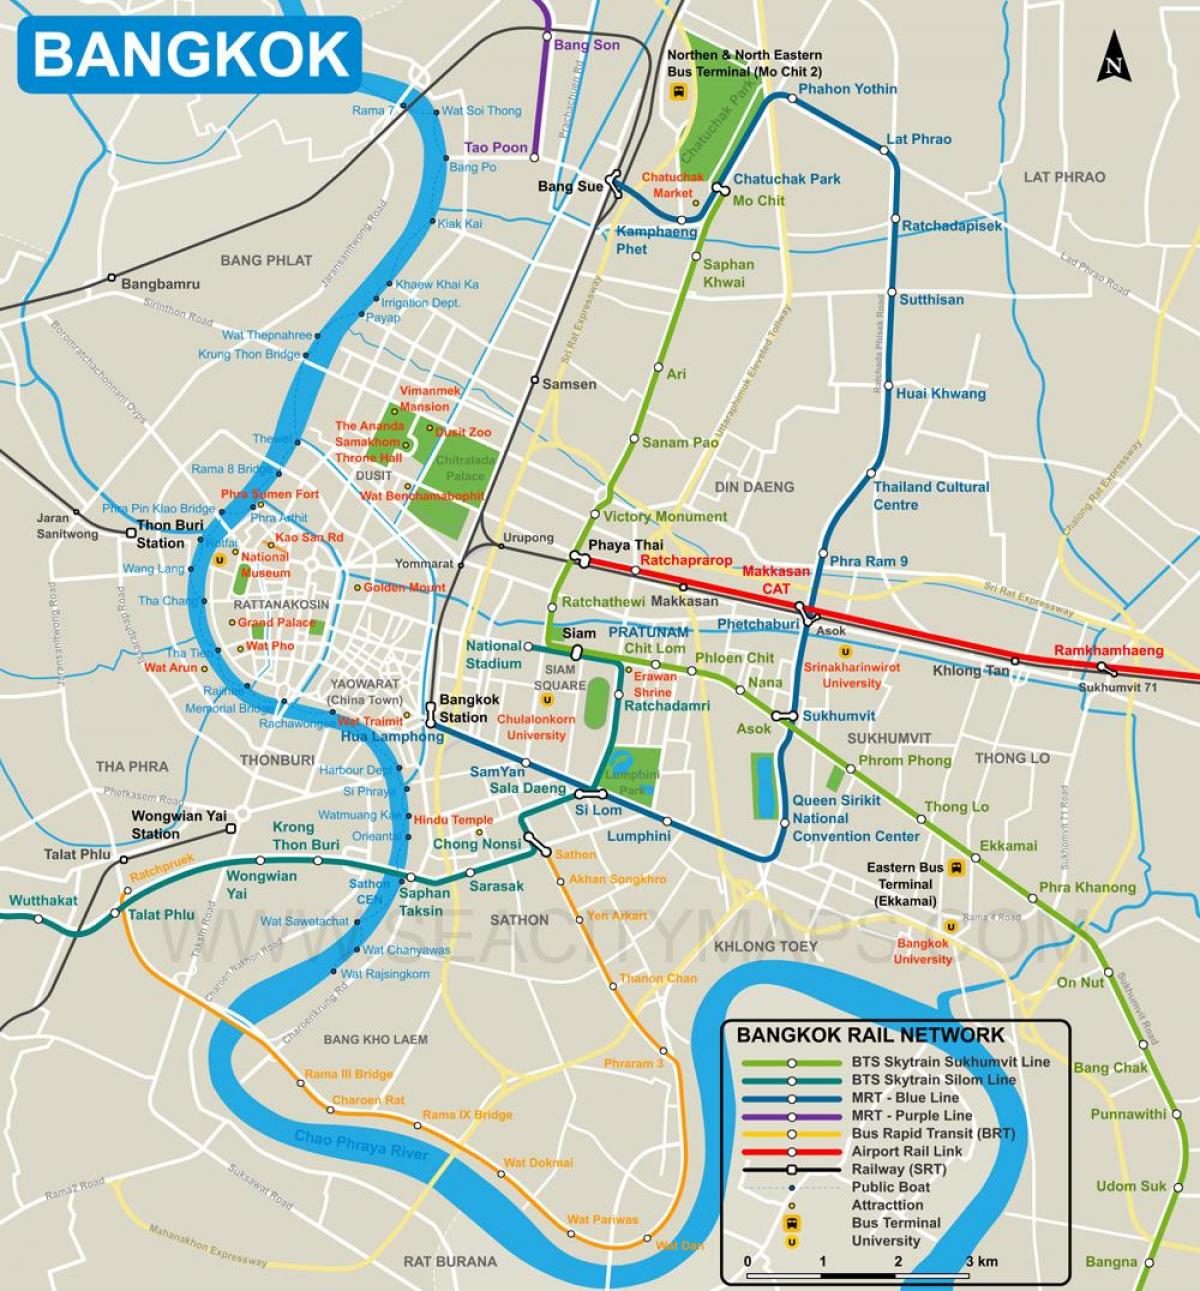 térkép bangkok city center